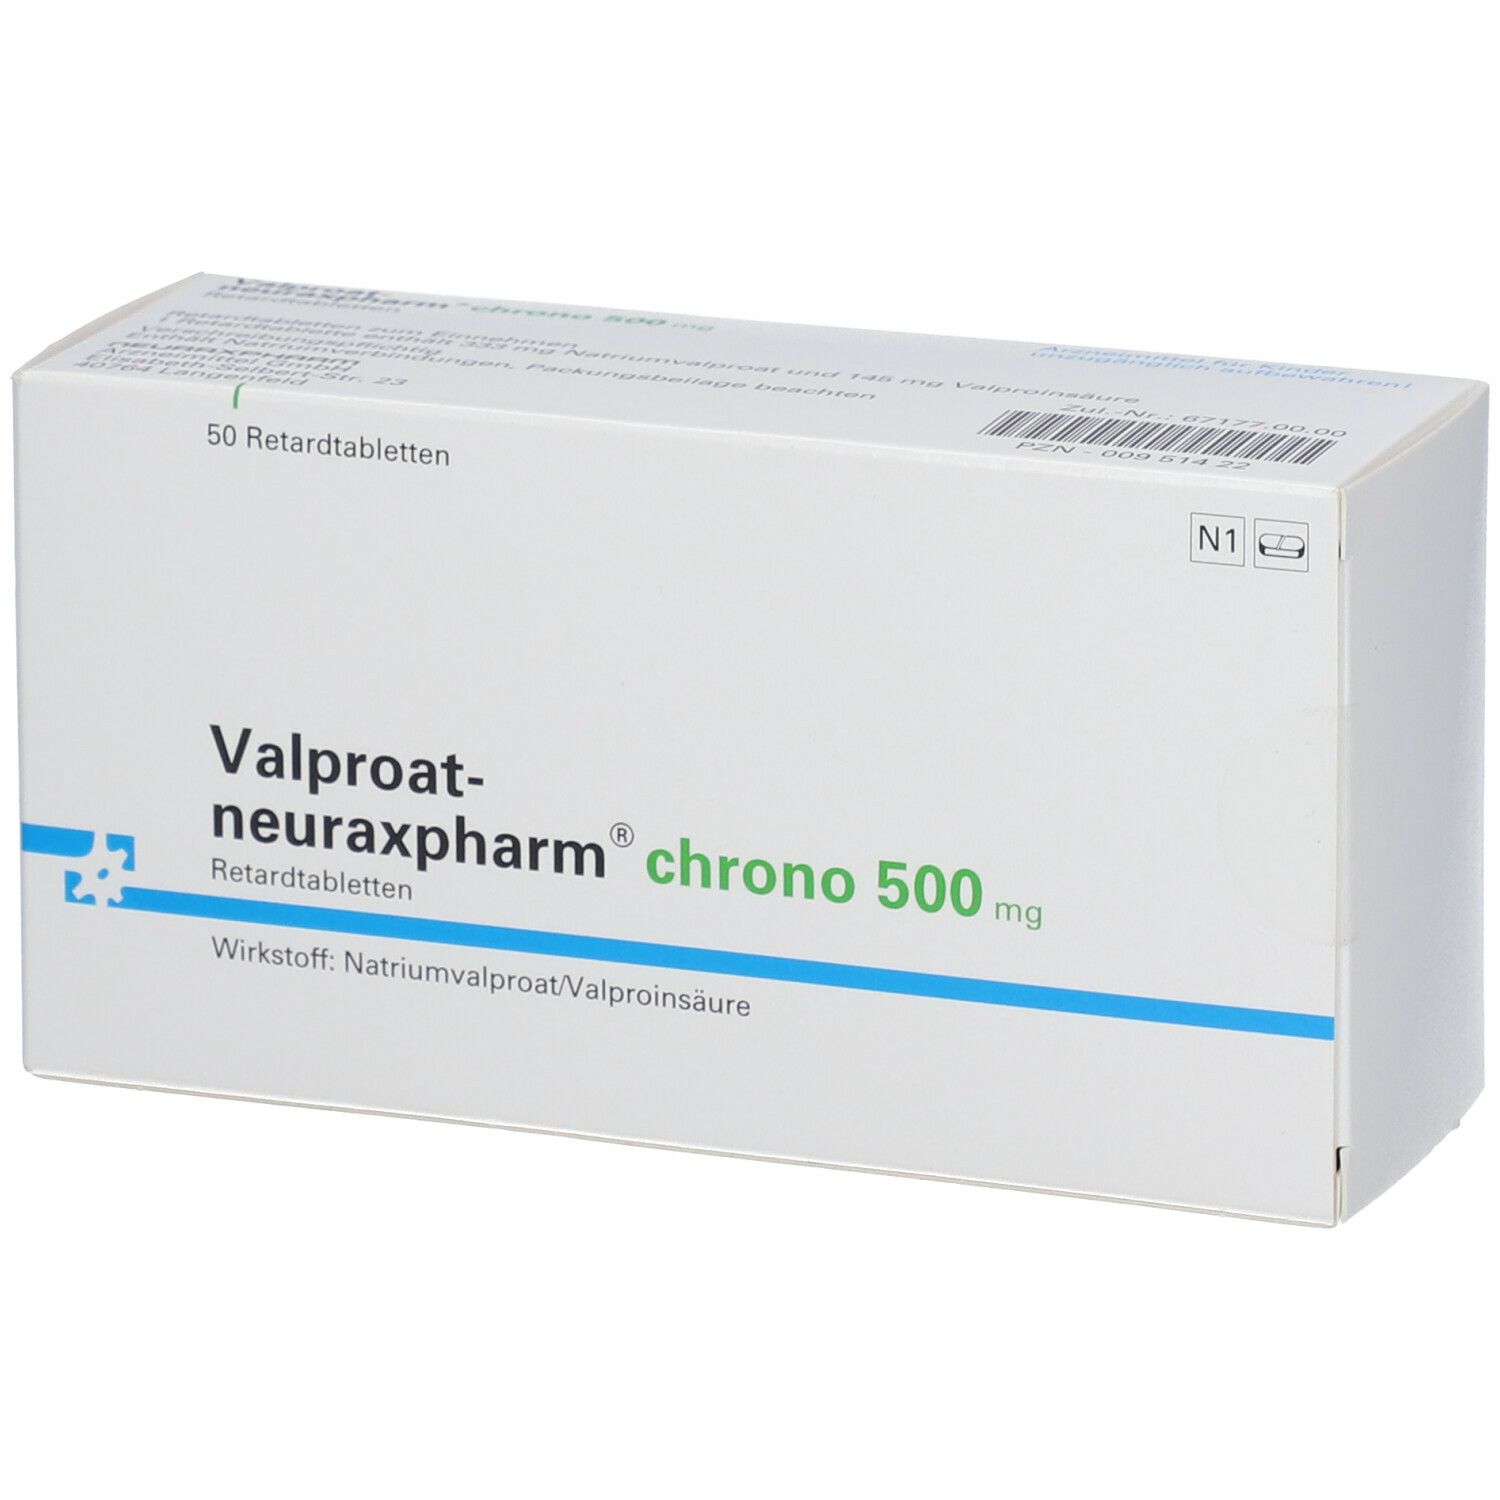 Valproat-neuraxpharm® Chrono 500 mg